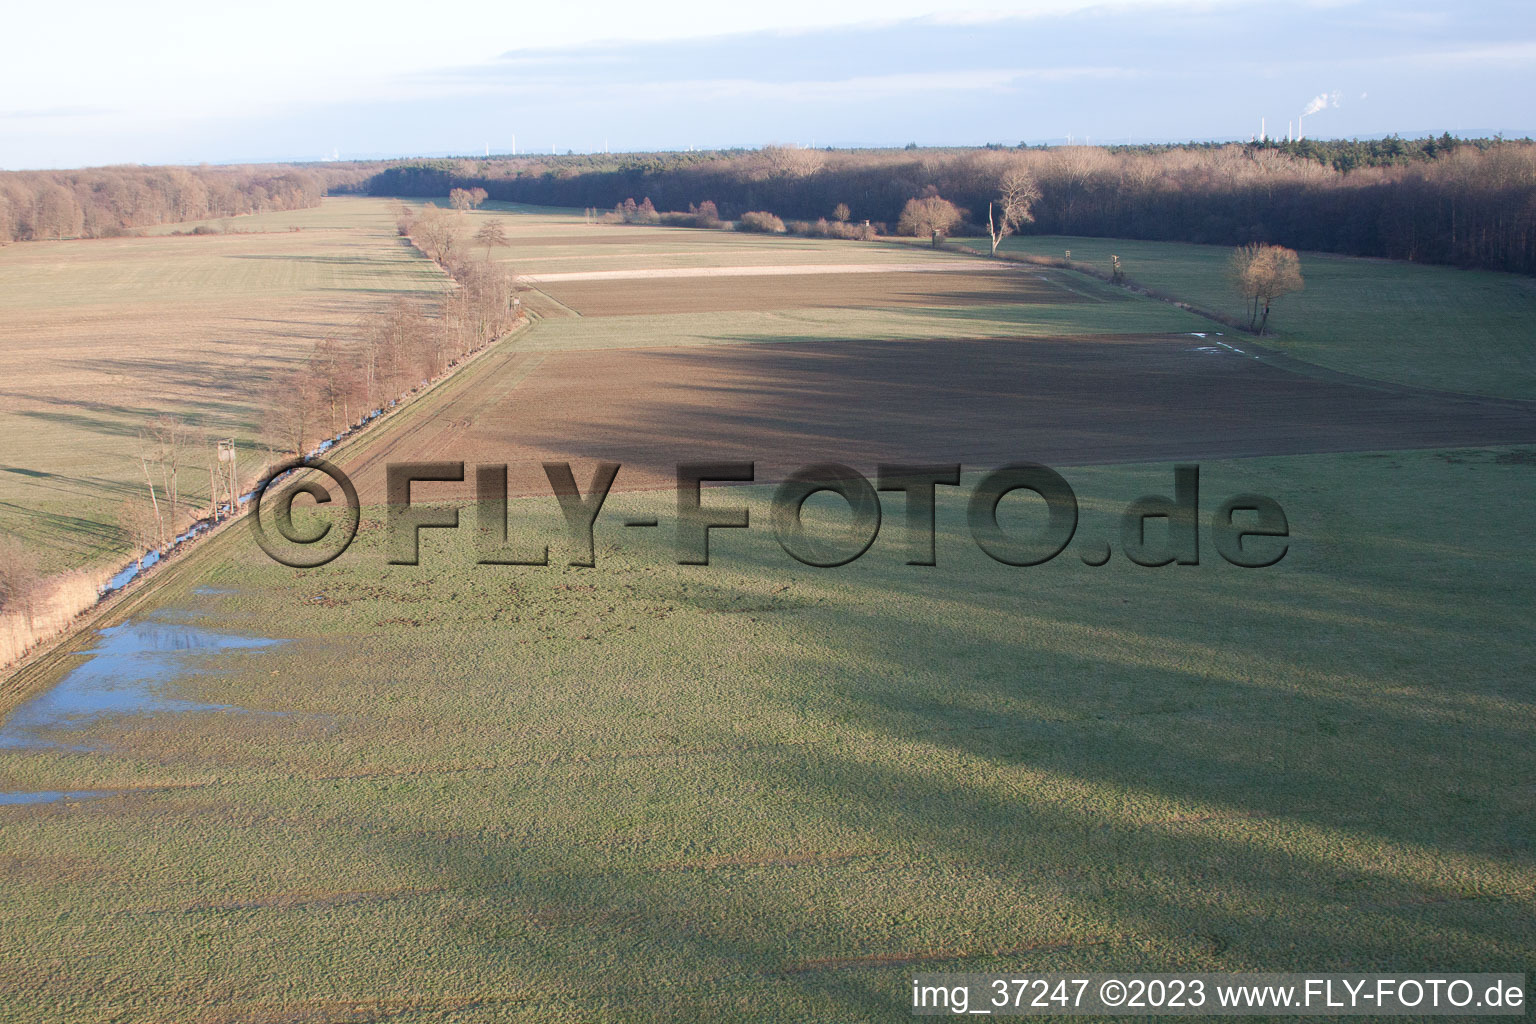 Vue aérienne de Vallée d'Otterbachtal à Freckenfeld dans le département Rhénanie-Palatinat, Allemagne